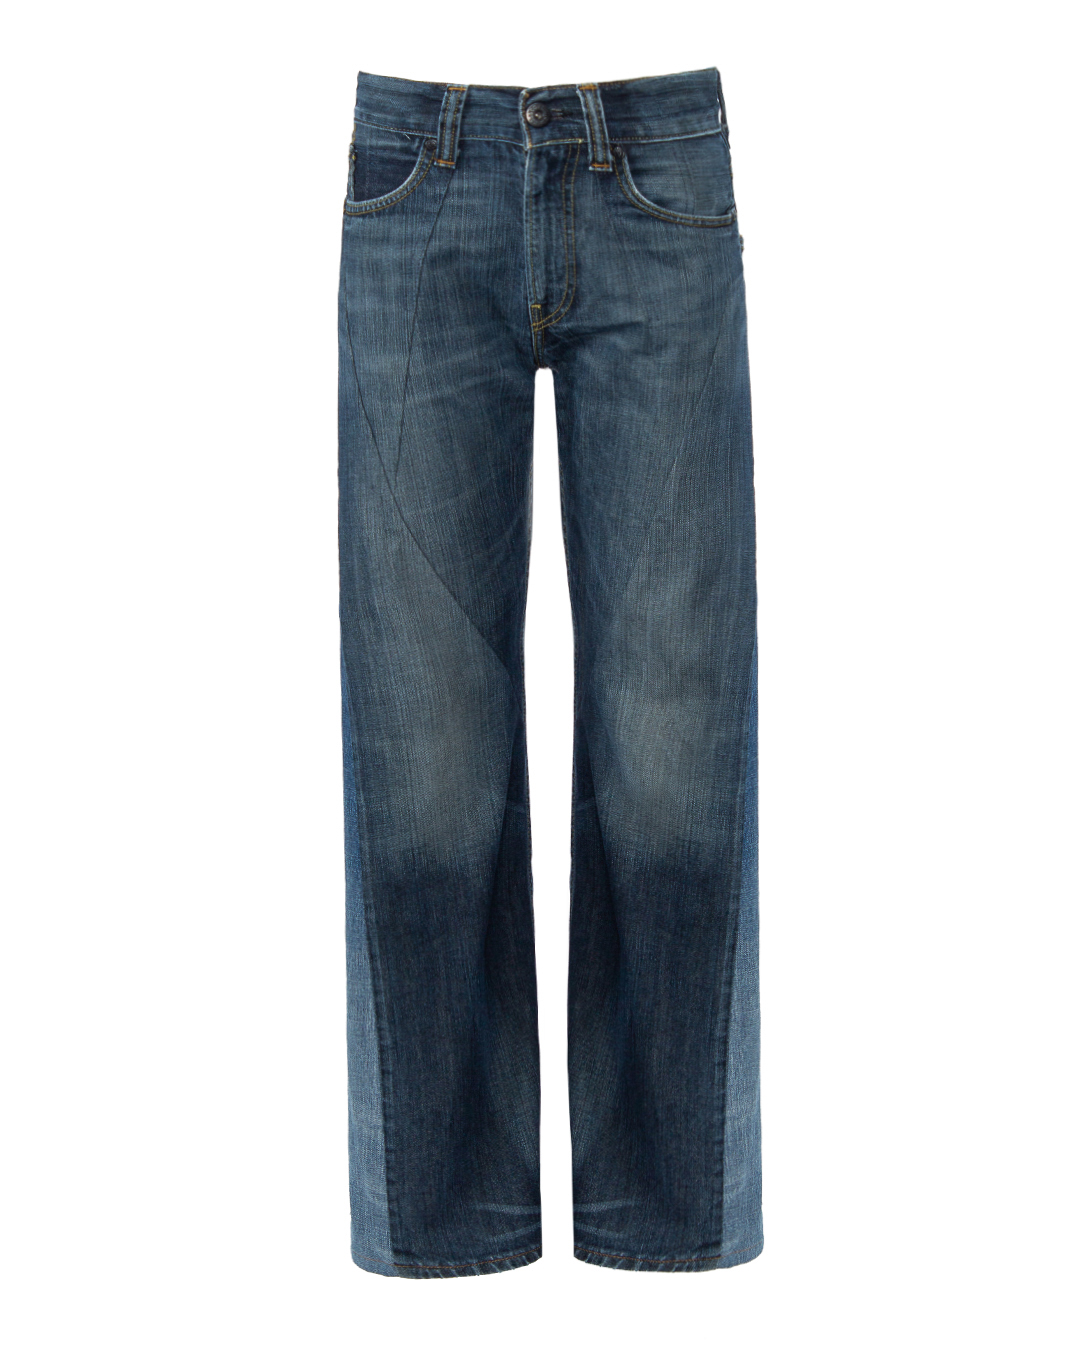 1 и OFF широкие винтажные джинсы синего цвета купить по цене 66800 р-